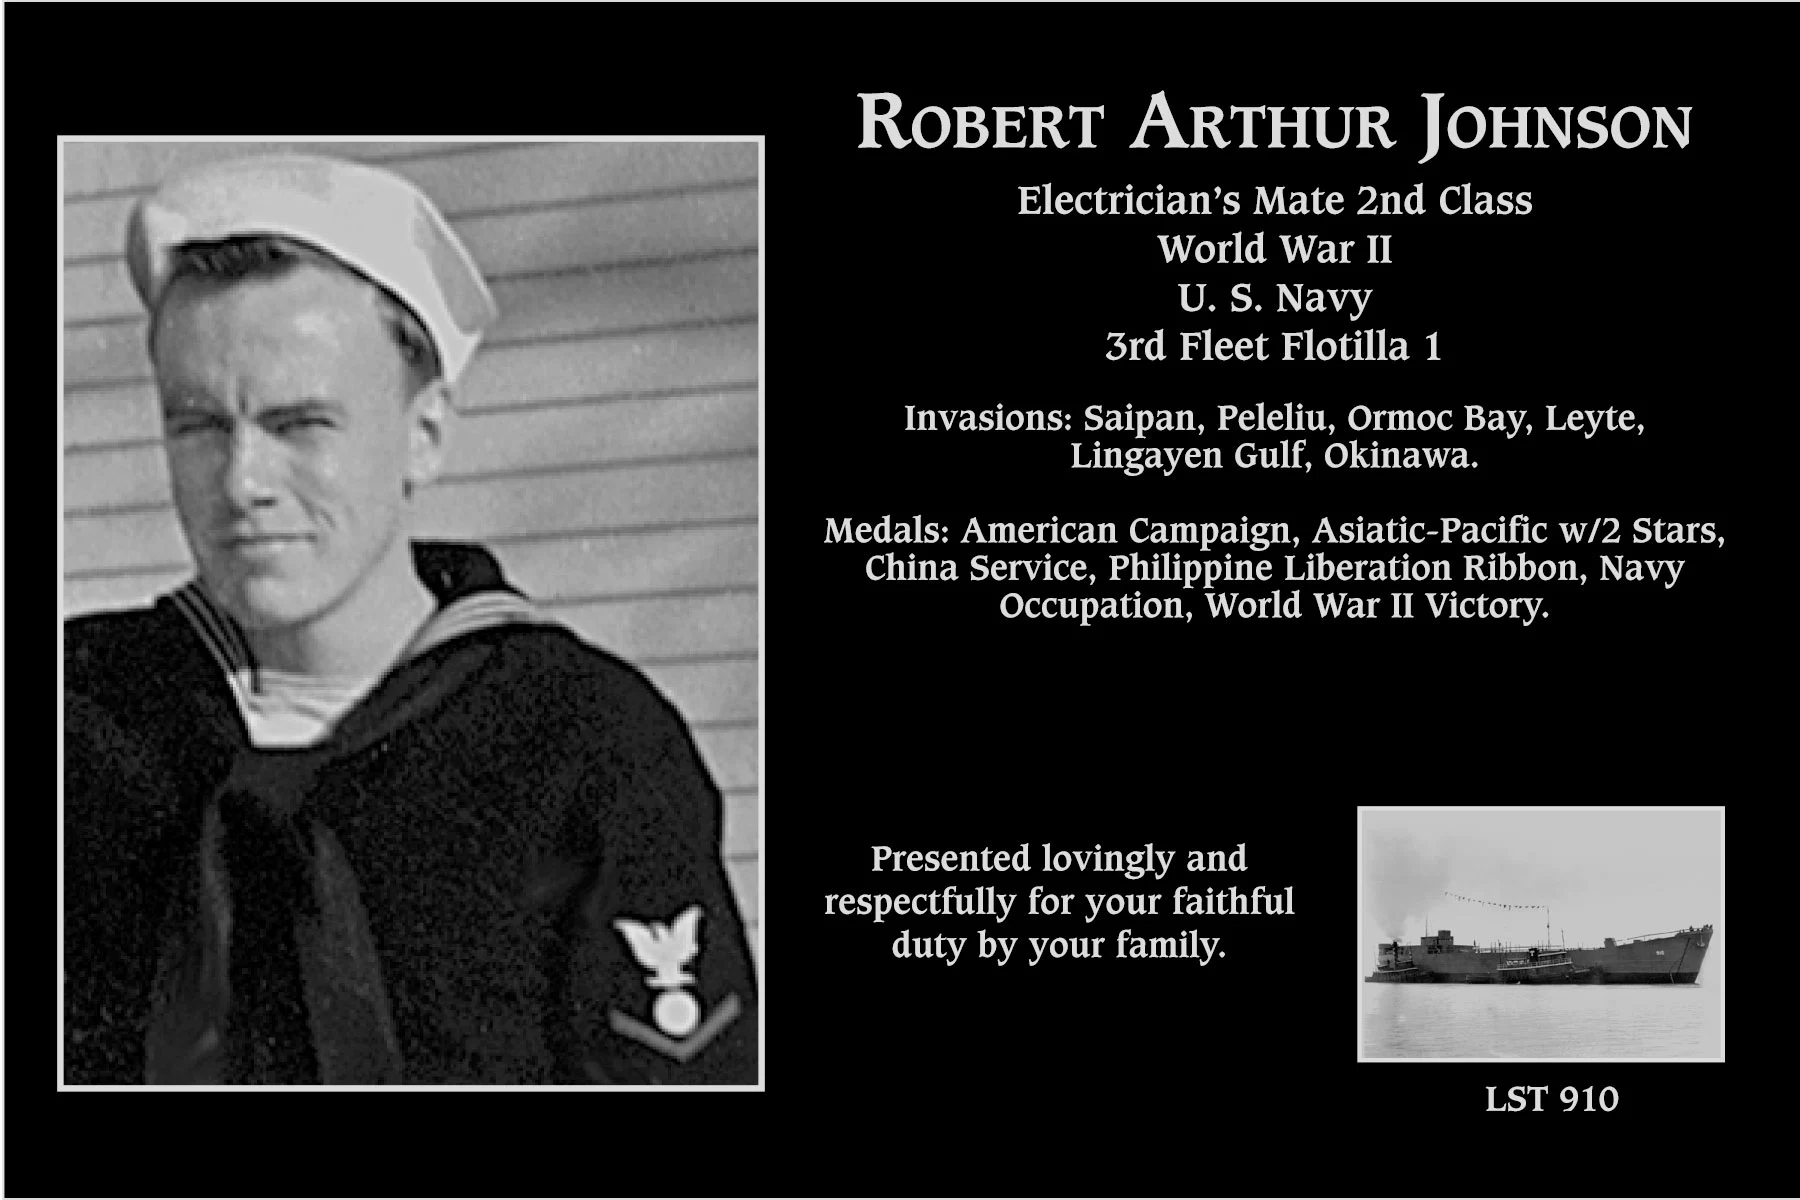 Robert Arthur Johnson